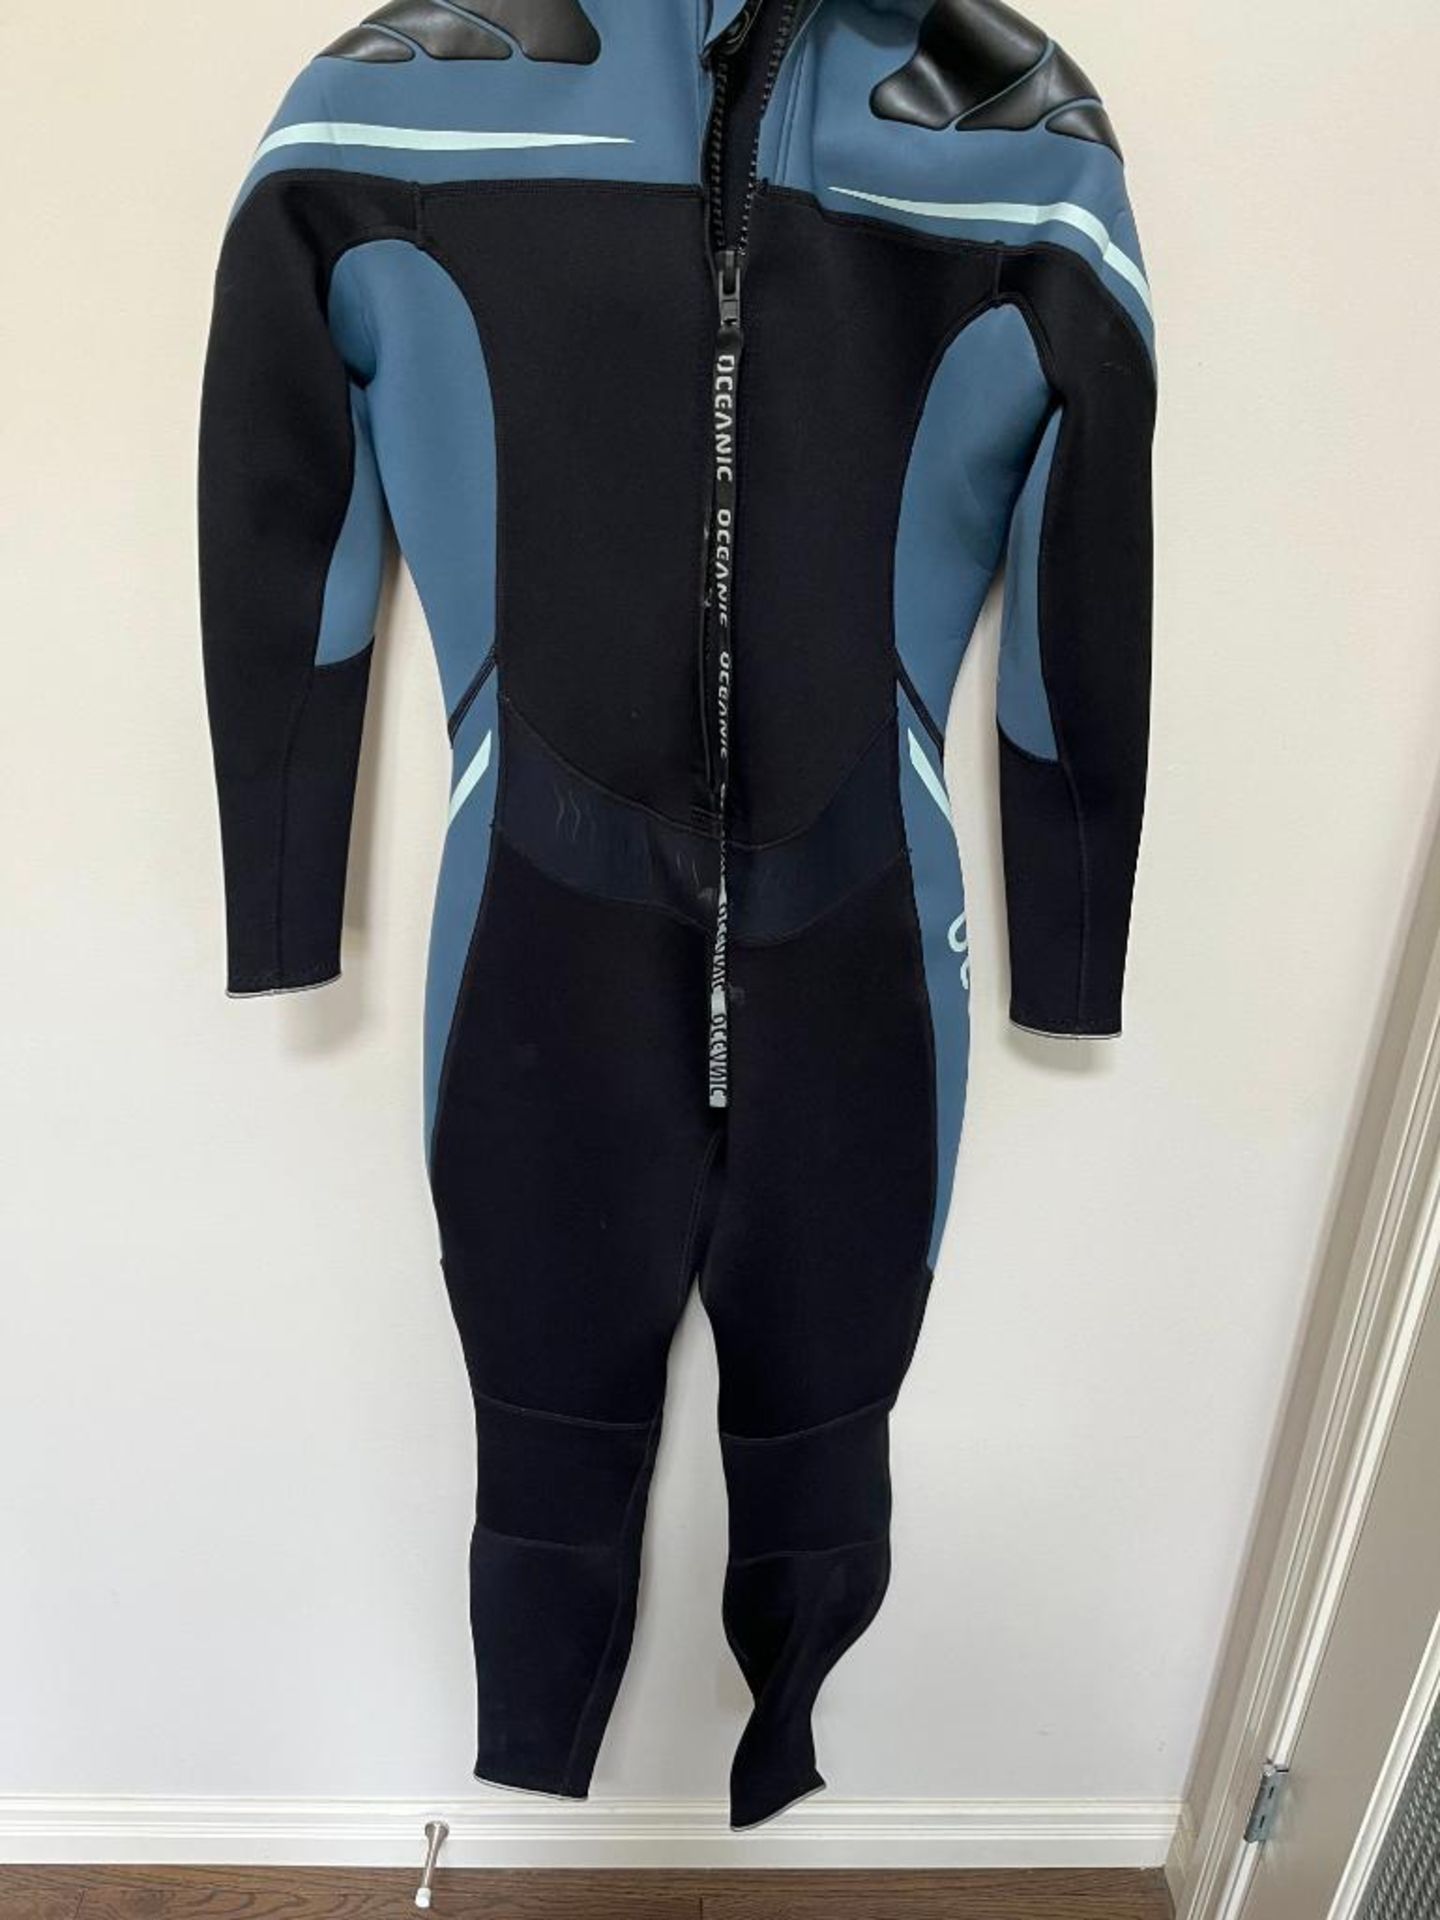 Oceanic Ultra 3/2 7 Mil Medium Dry Suit.